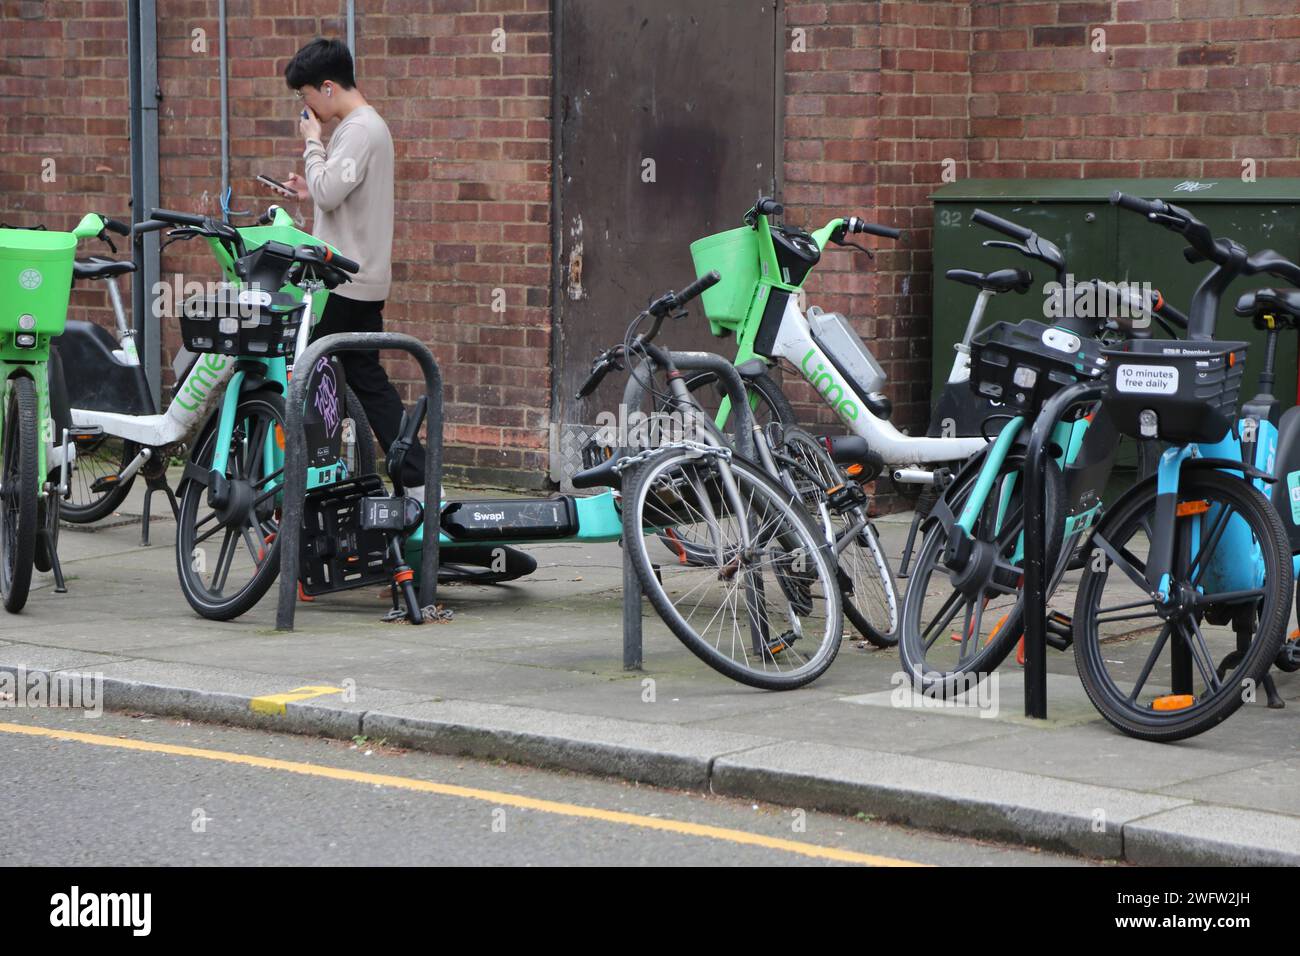 Tier, Lime et River e-Bike Dockless système de location de vélos sur le trottoir Chelsea Londres Angleterre Banque D'Images